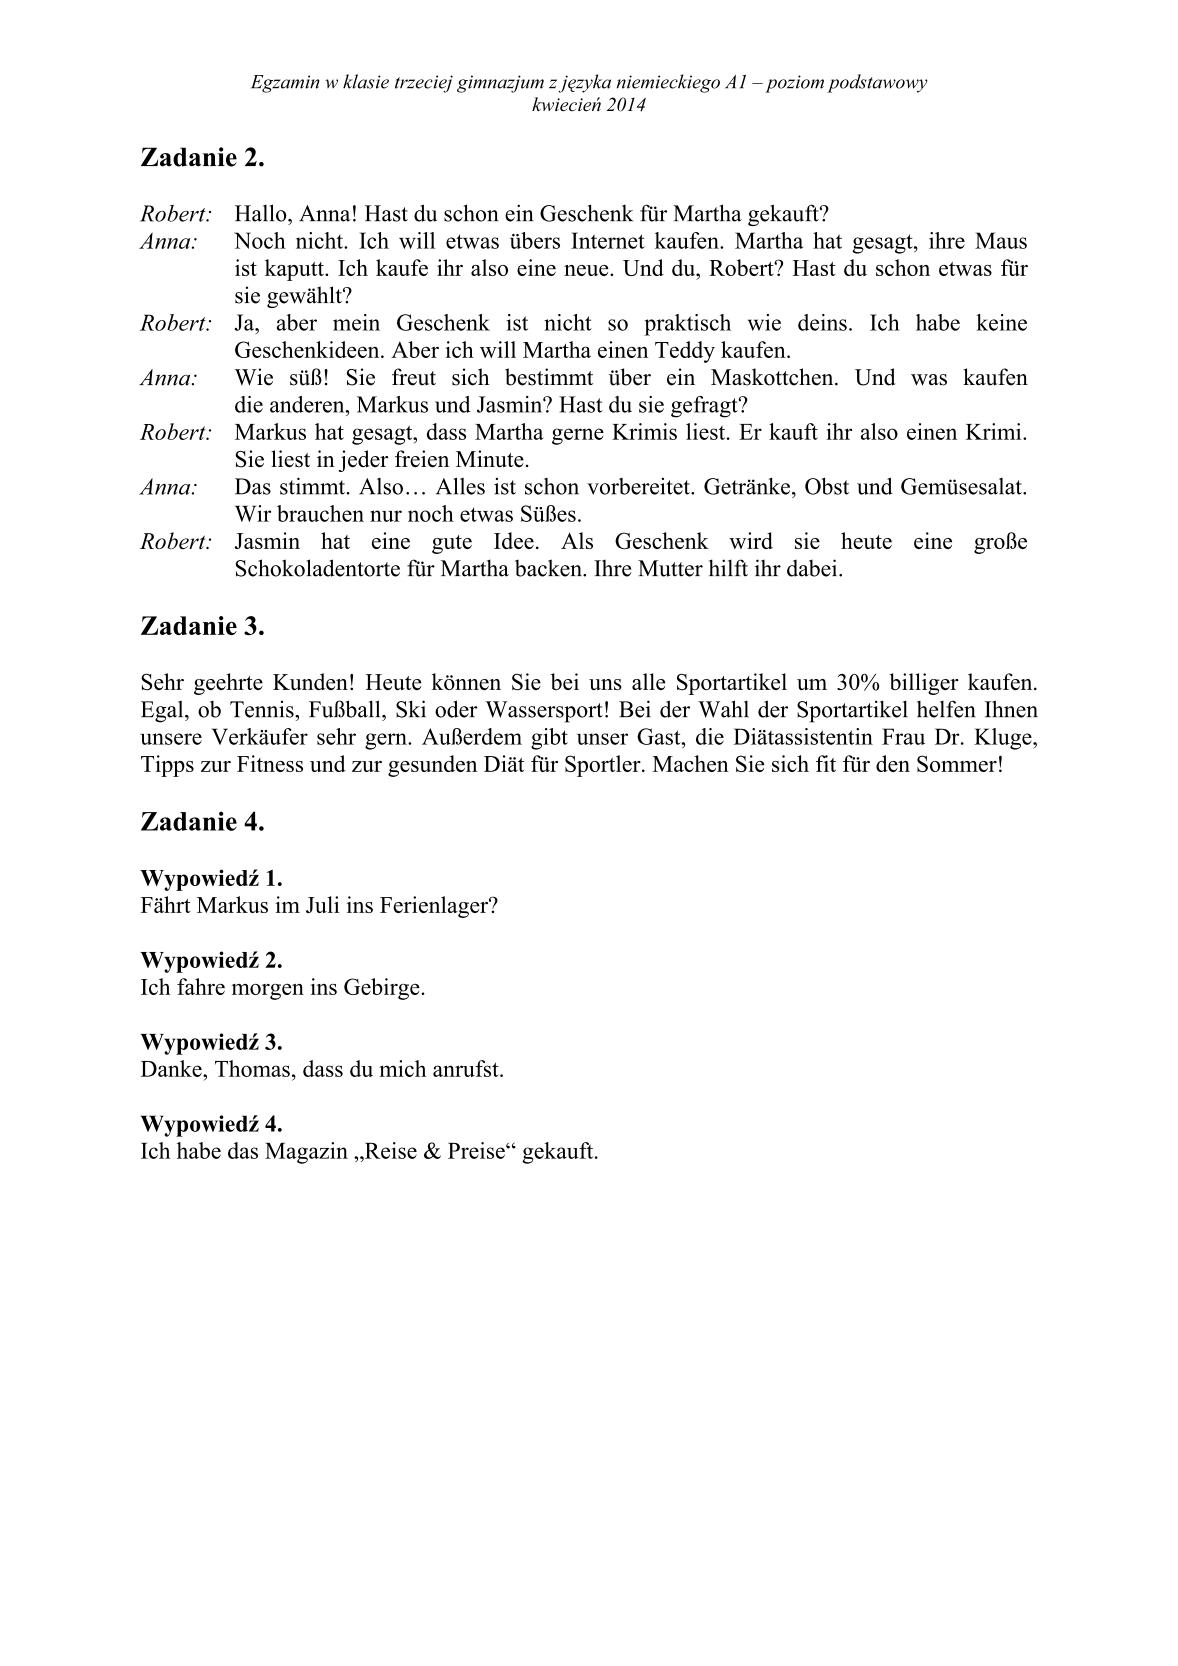 transkrypcja-niemiecki-poziom-podstawowy-egzamin-gimnazjalny-25.04.2014-2